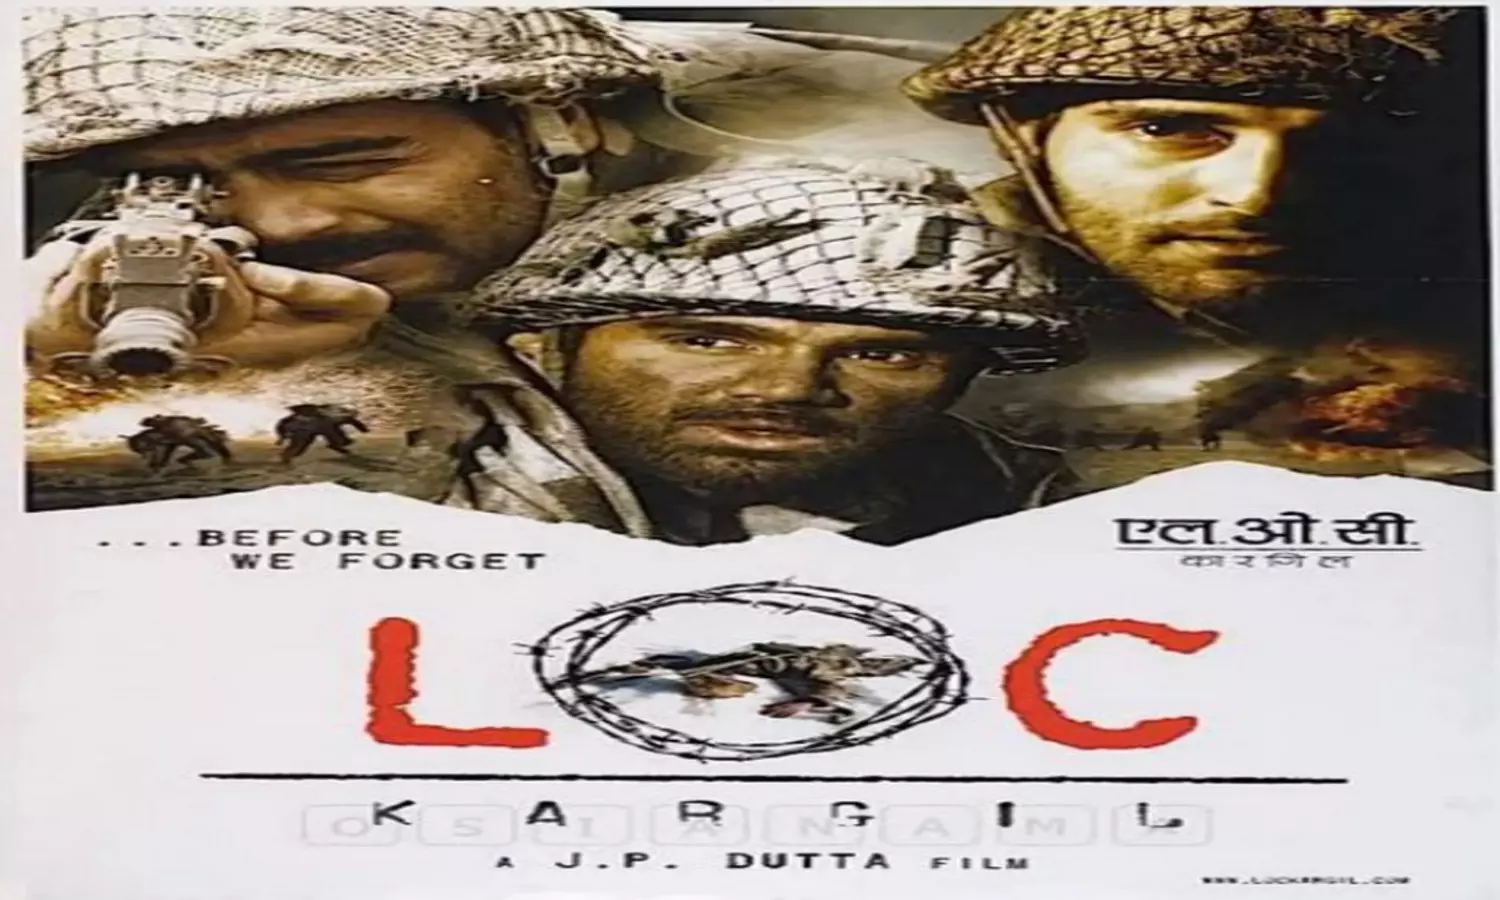 Indian Army Day : एलओसी कारगिल से लेकर शेरशाह तक, इन फिल्मों में दिखाया गया भारतीय सेना के बलिदान और पराक्रम के बारे में